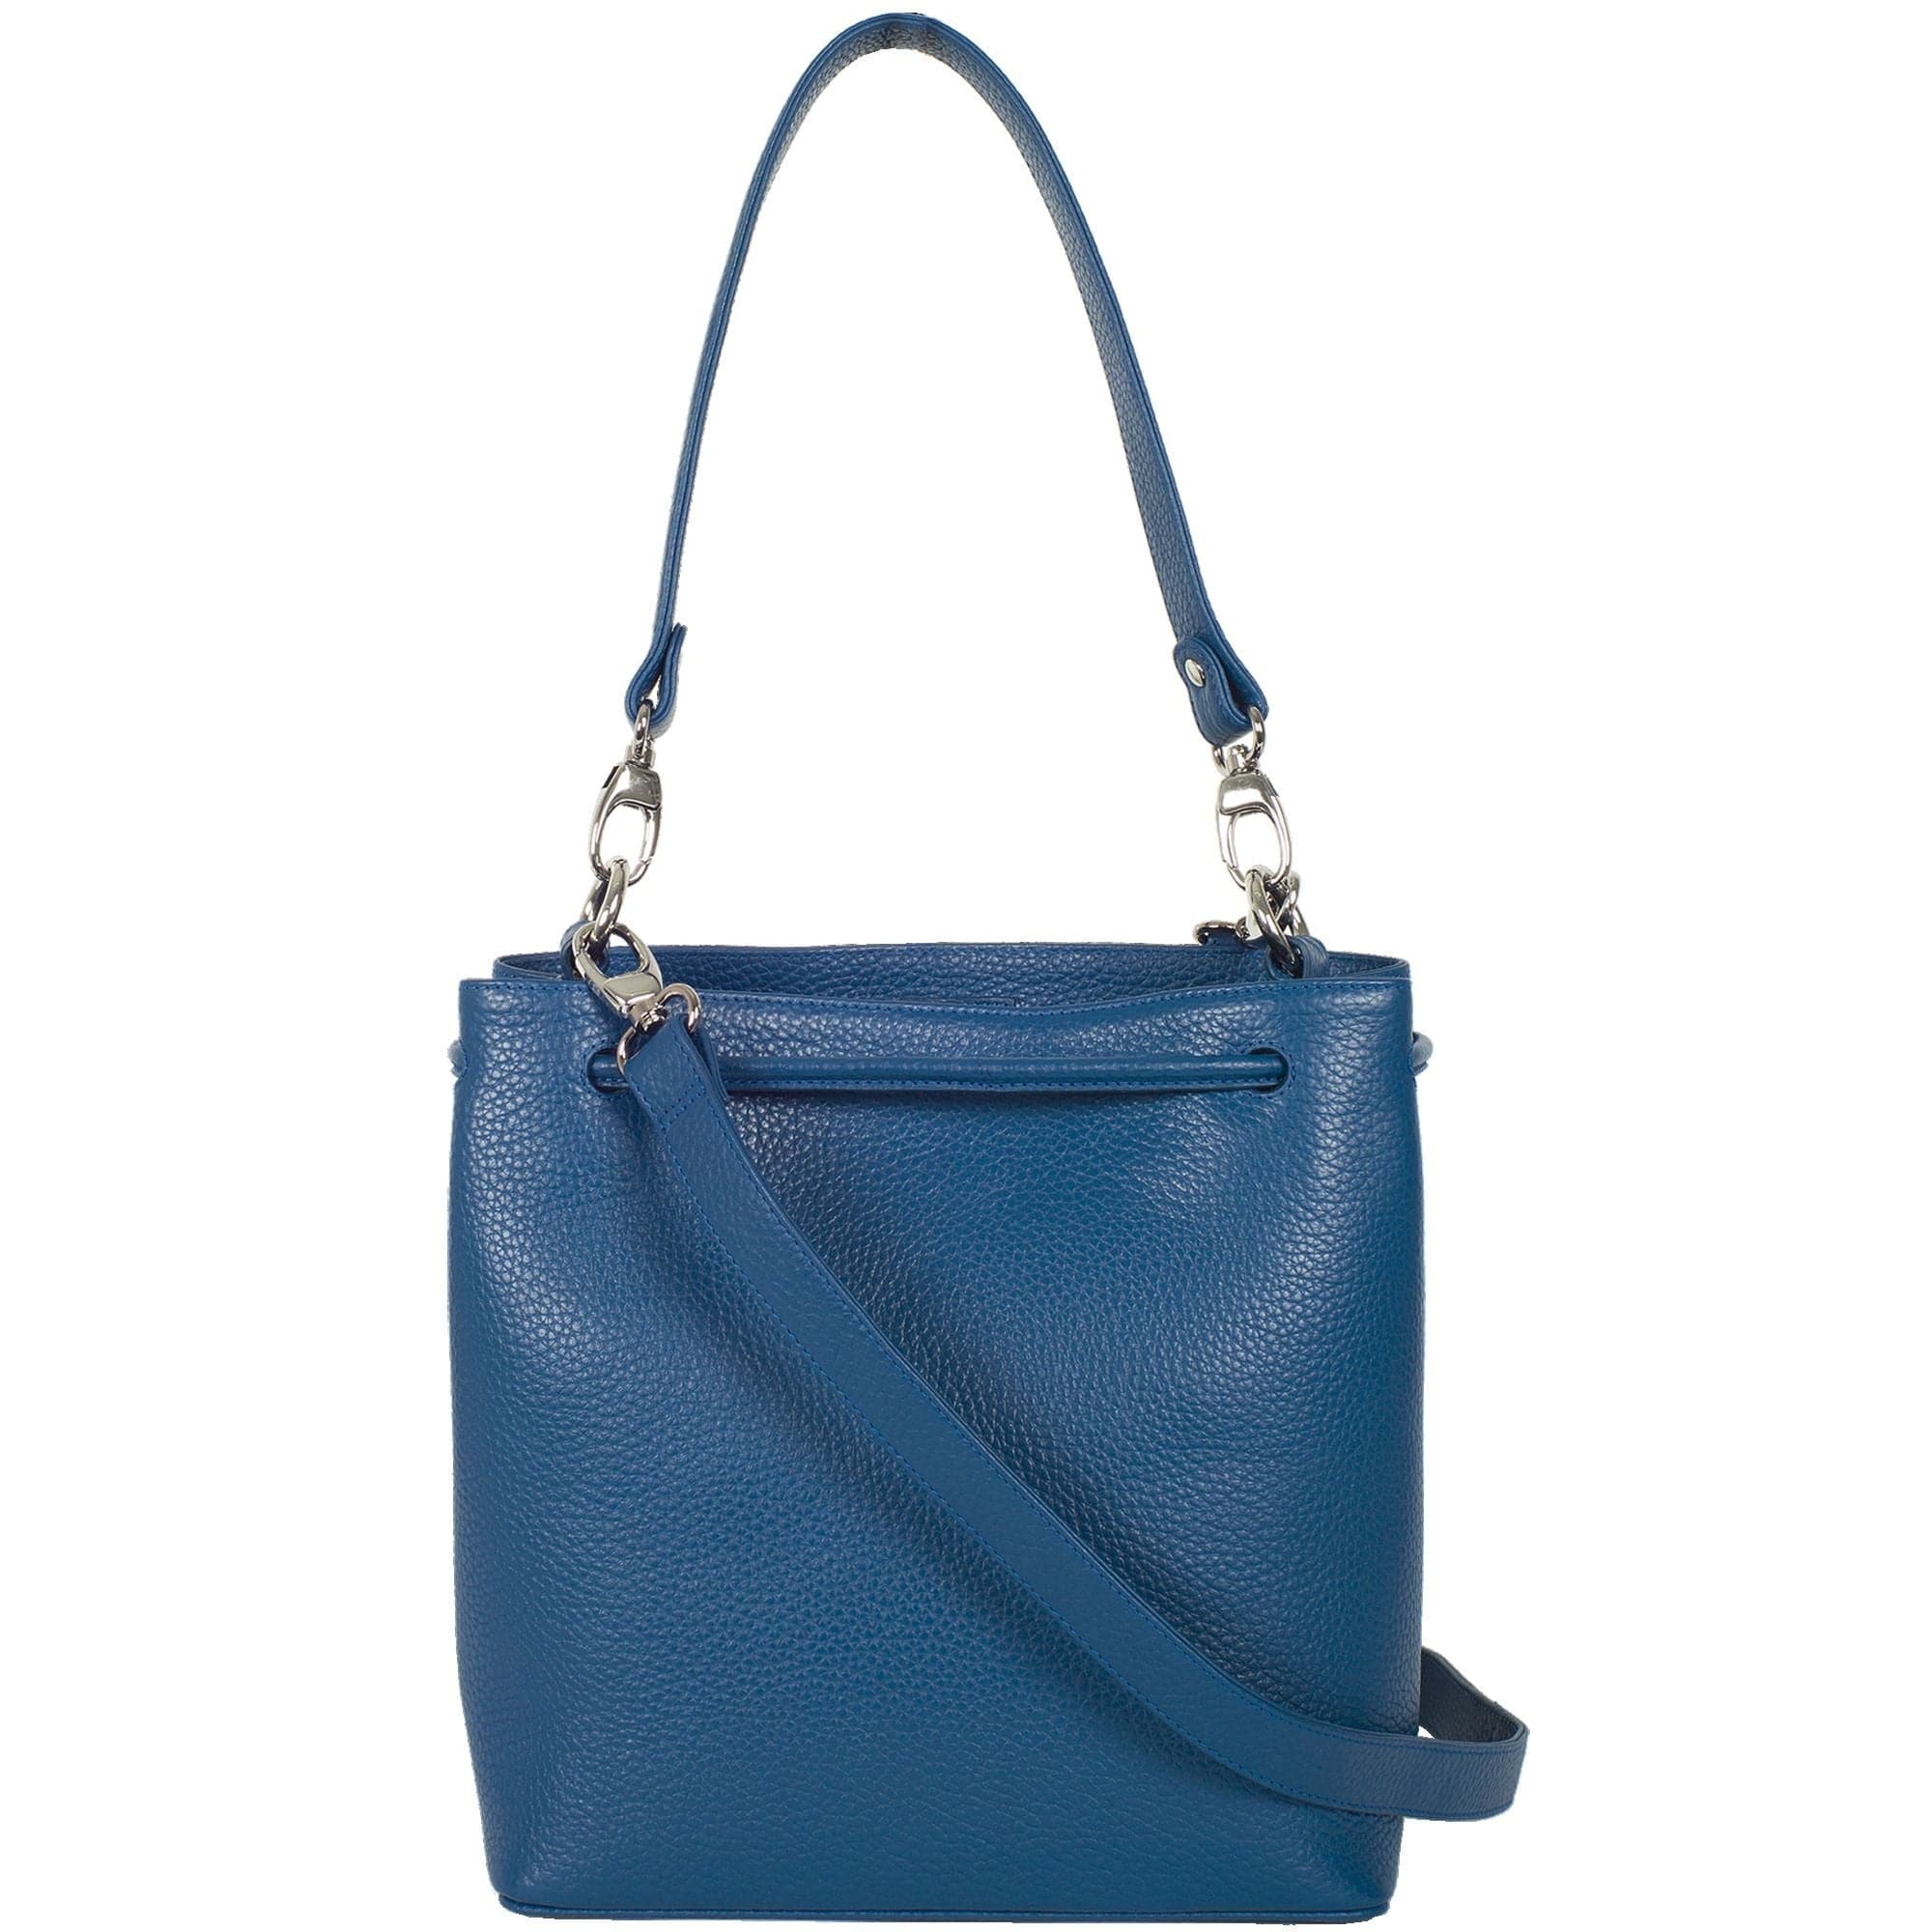 Handtasche Umhängetasche 10 Zoll Leder blau